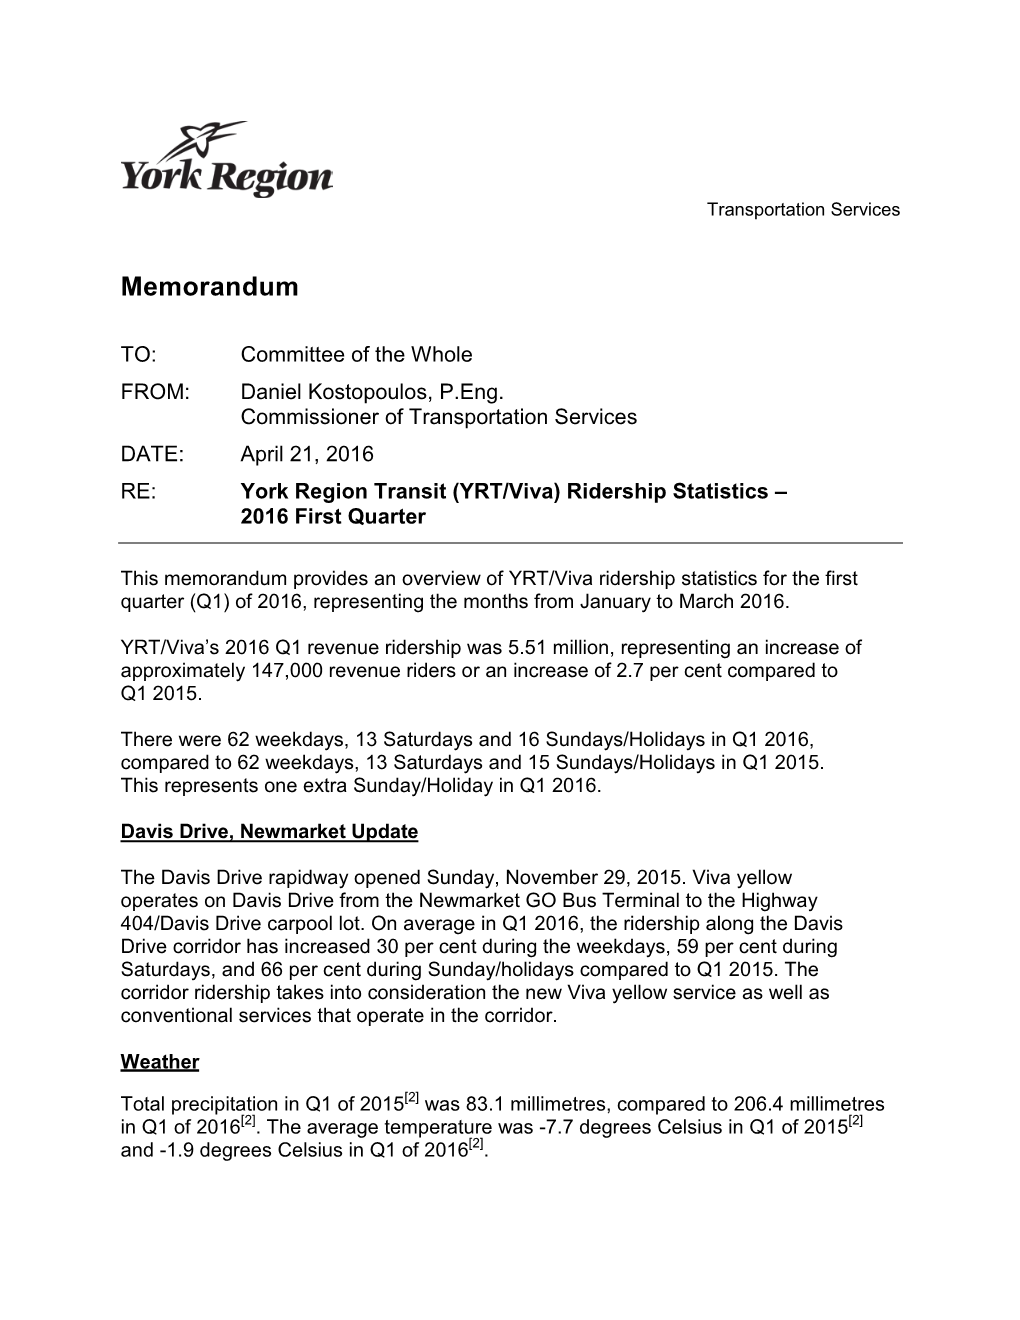 York Region Transit (YRT/Viva) Ridership Statistics – 2016 First Quarter